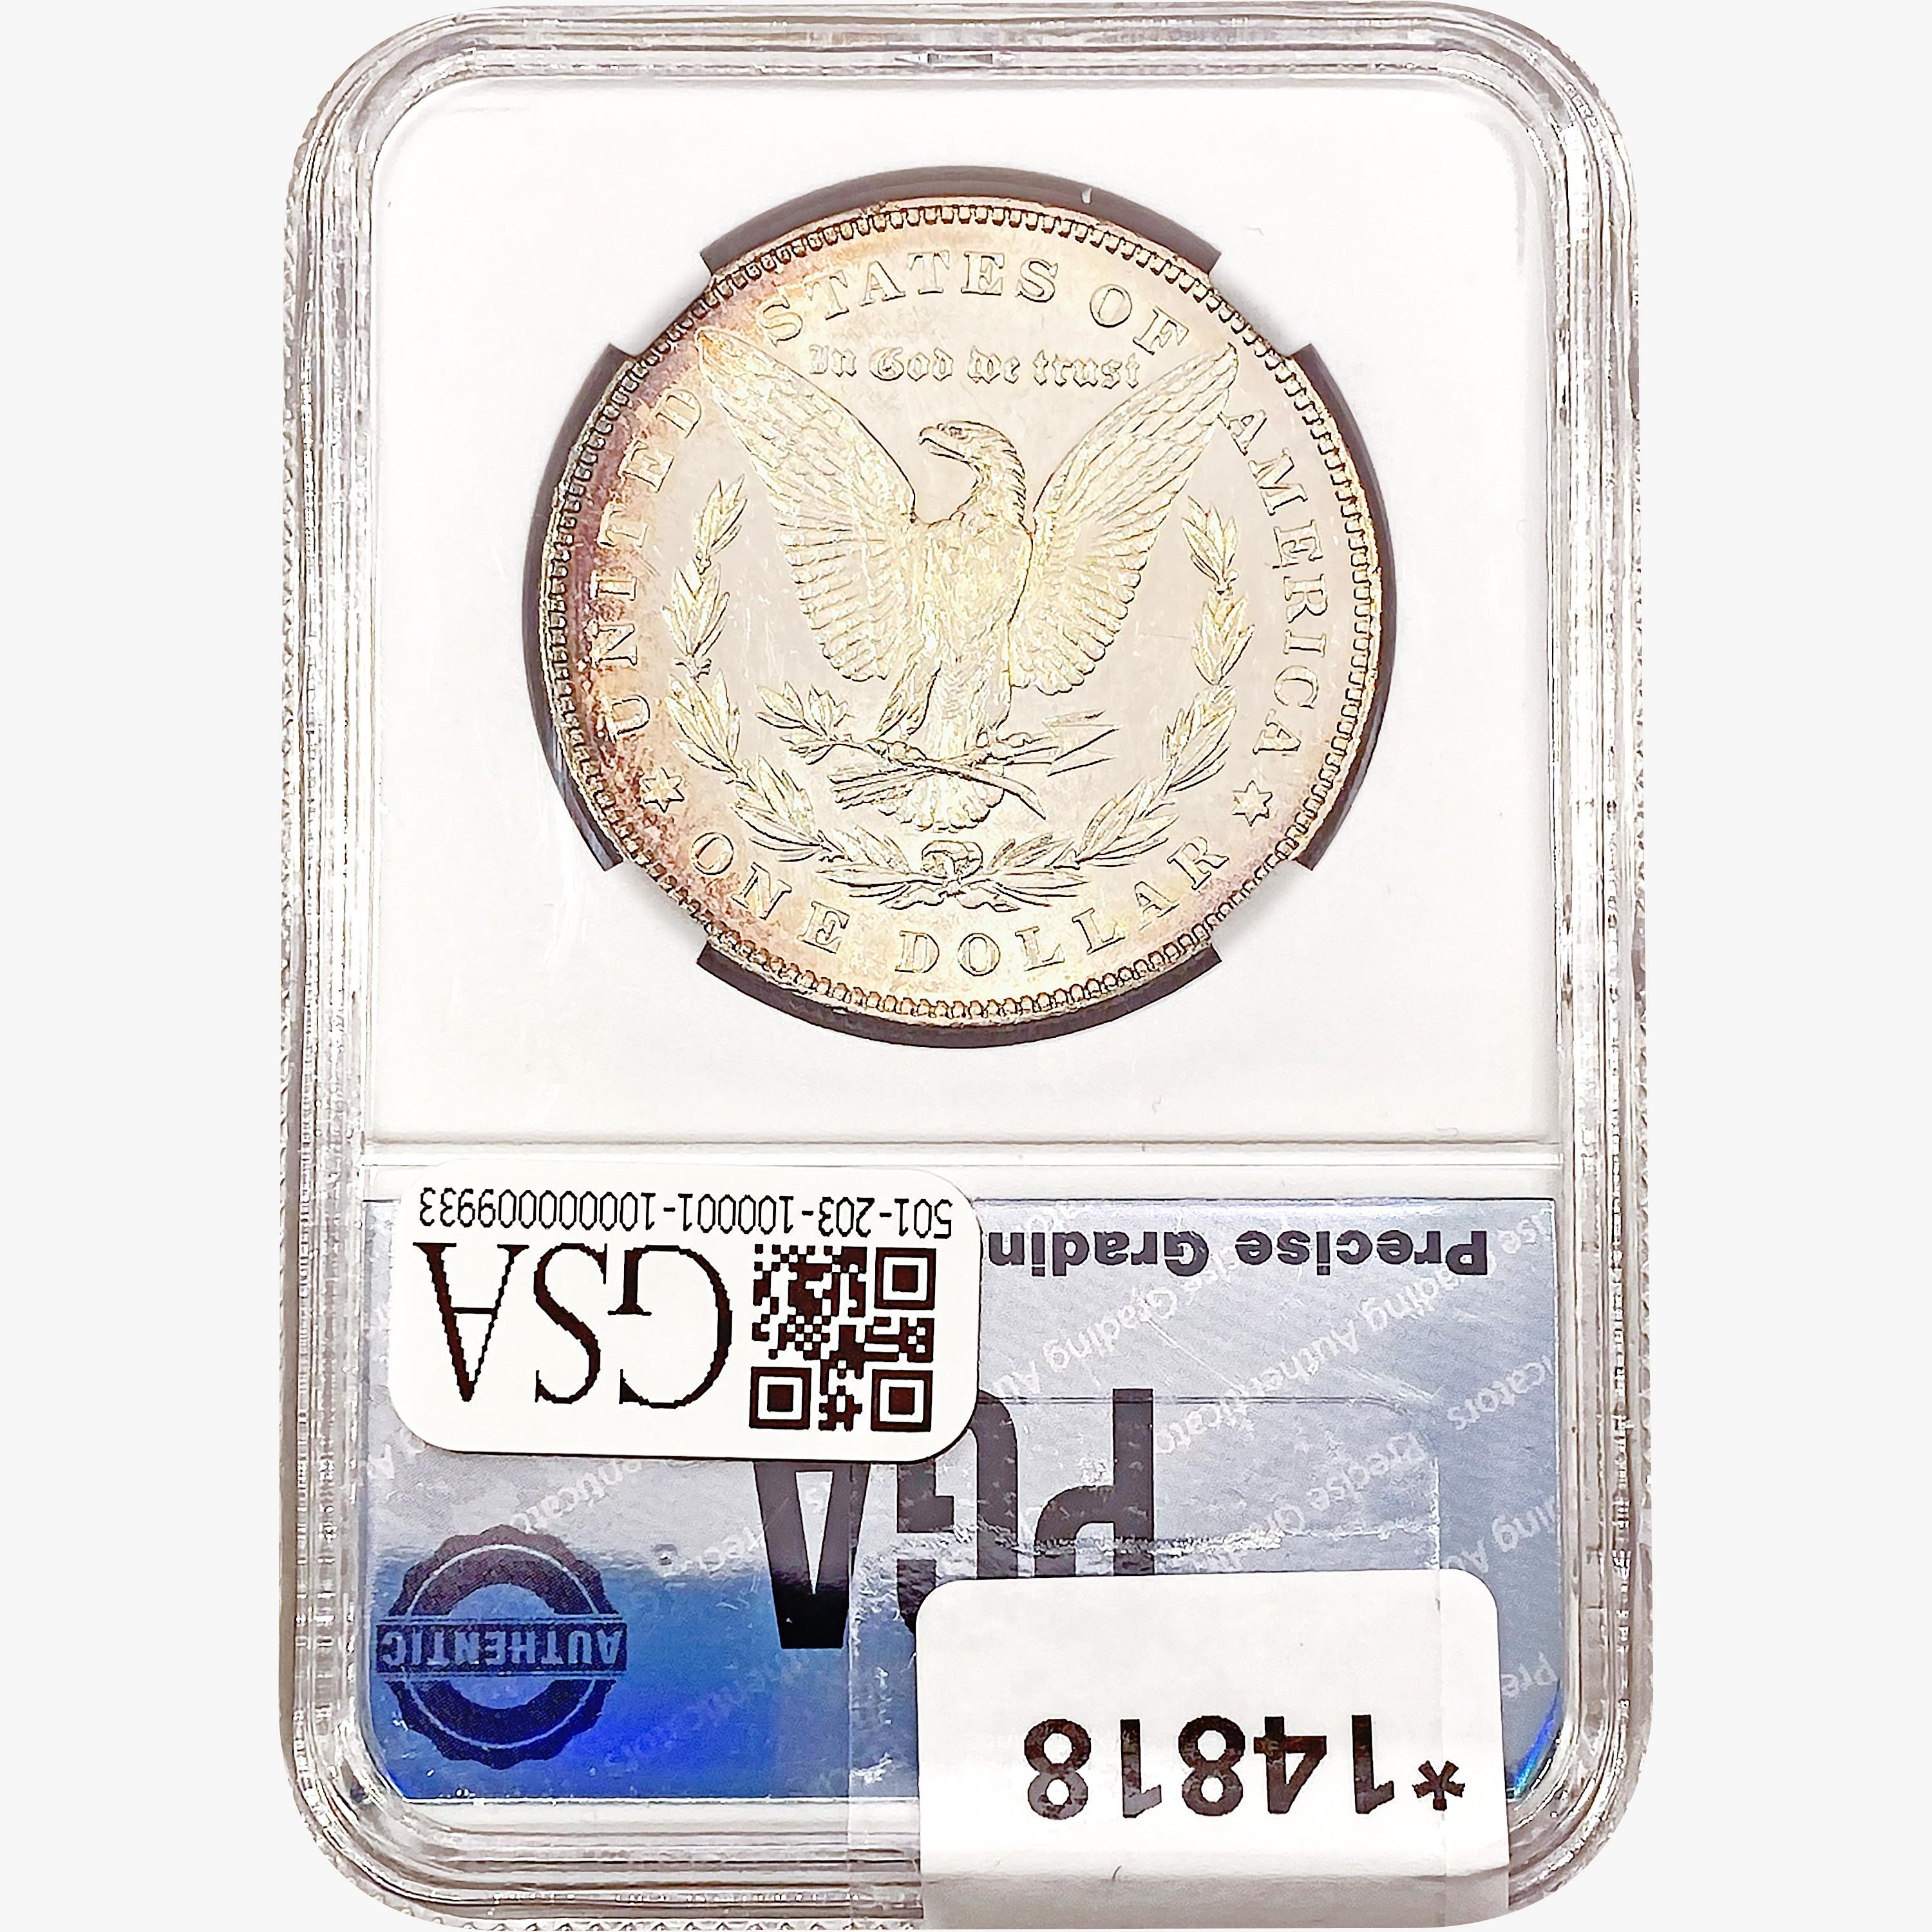 1878 7/8TF Morgan Silver Dollar PGA MS63